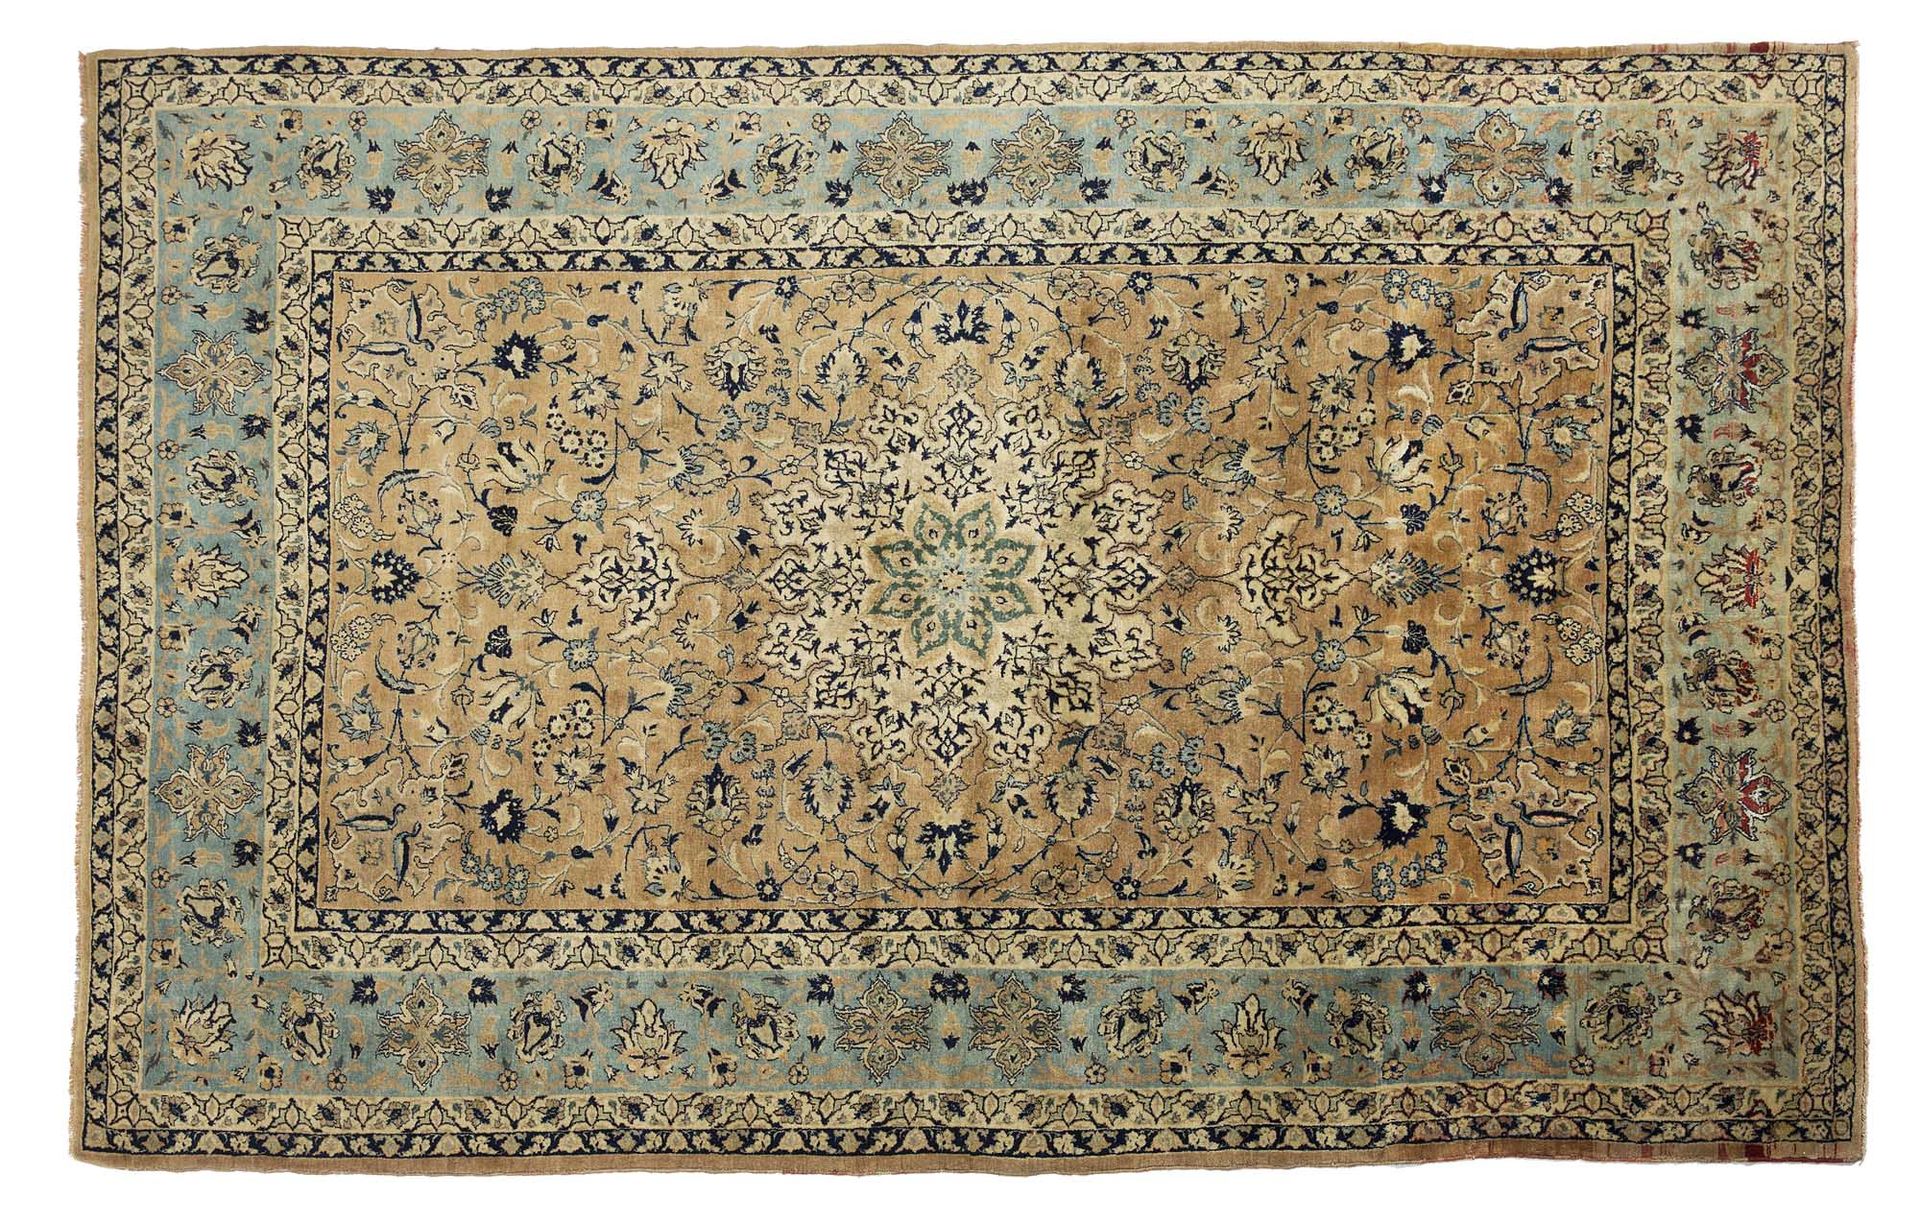 Null 精美的ISPAHAN地毯上的丝链，（波斯），20世纪初。

尺寸：232 x 144厘米

技术特点 : 羊毛天鹅绒，丝质衬底。

一个精致的象牙色、&hellip;